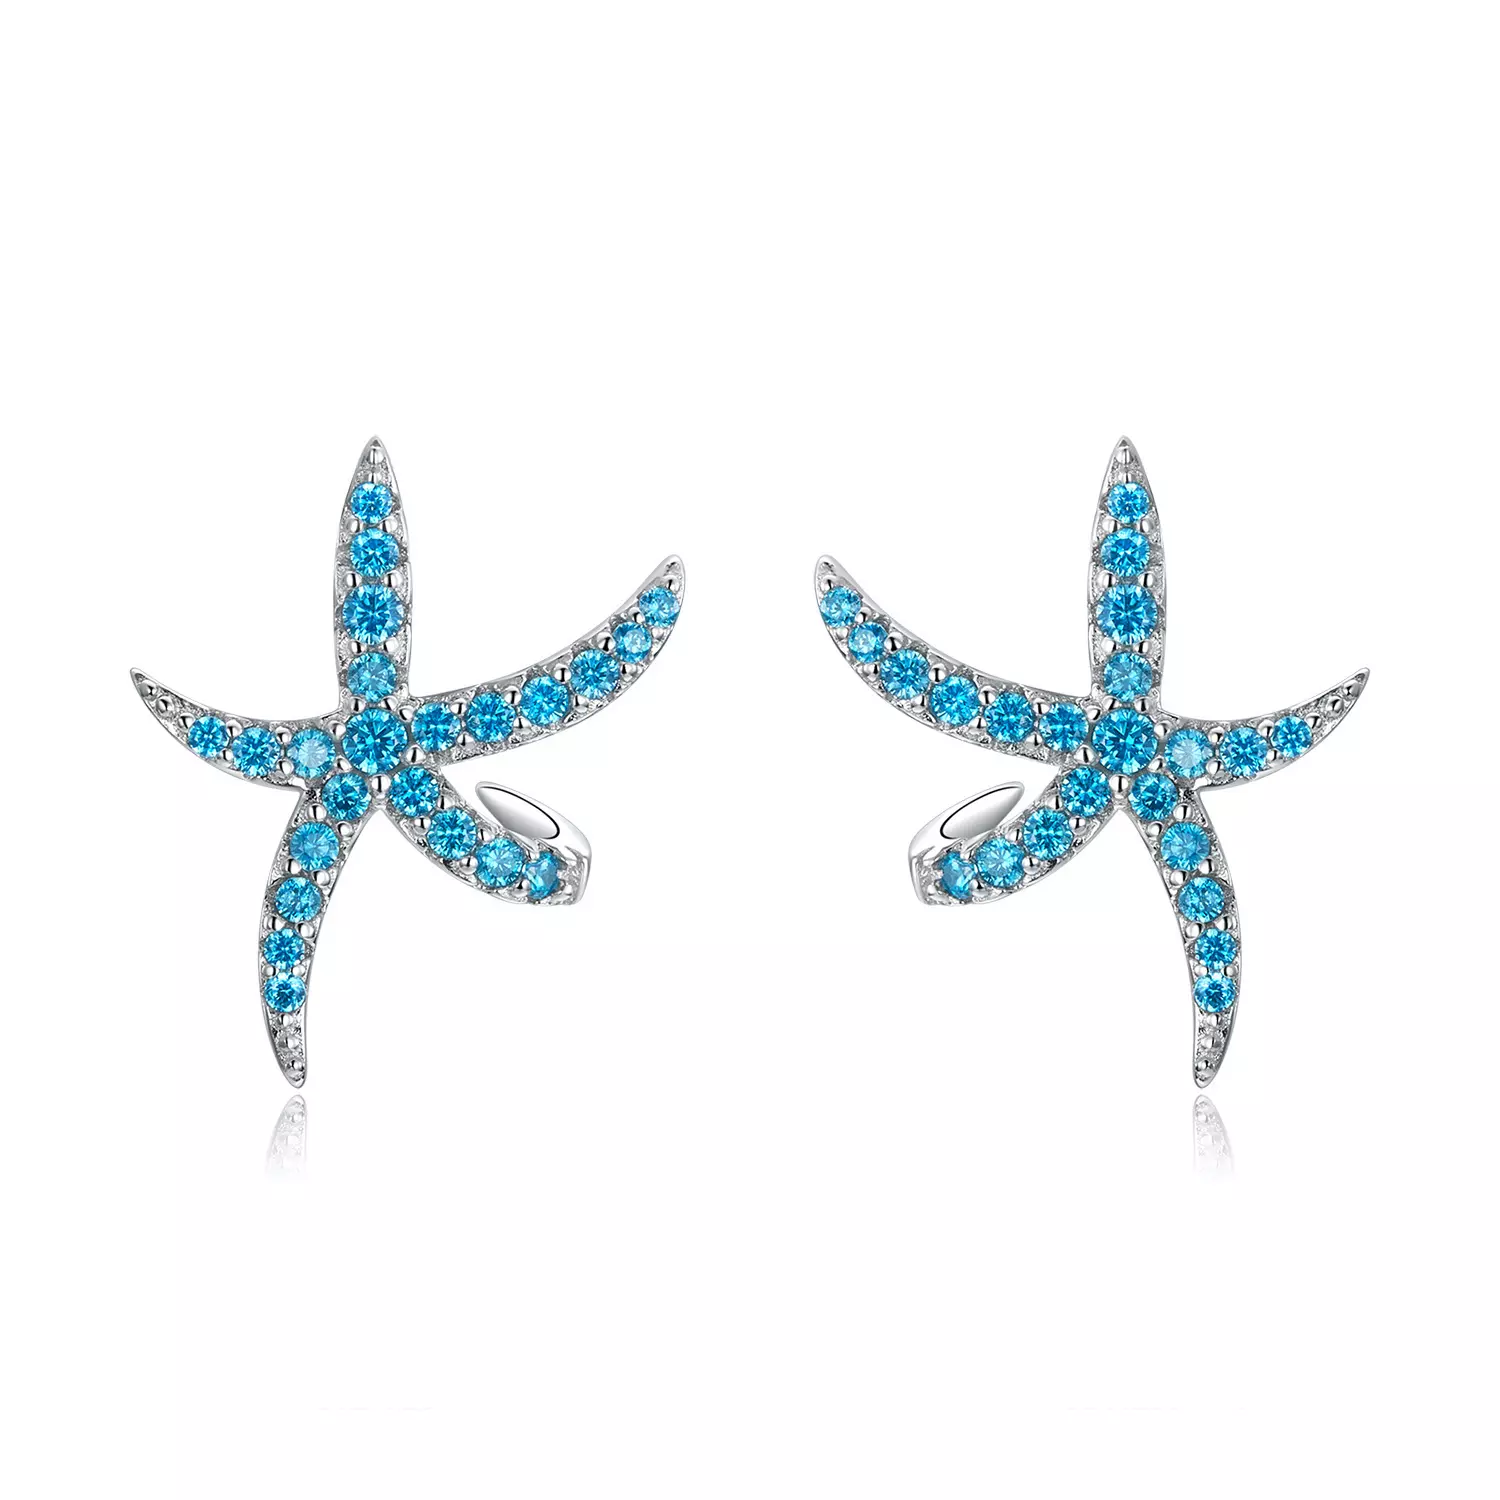 Cercei din argint Turquoise Sea Star